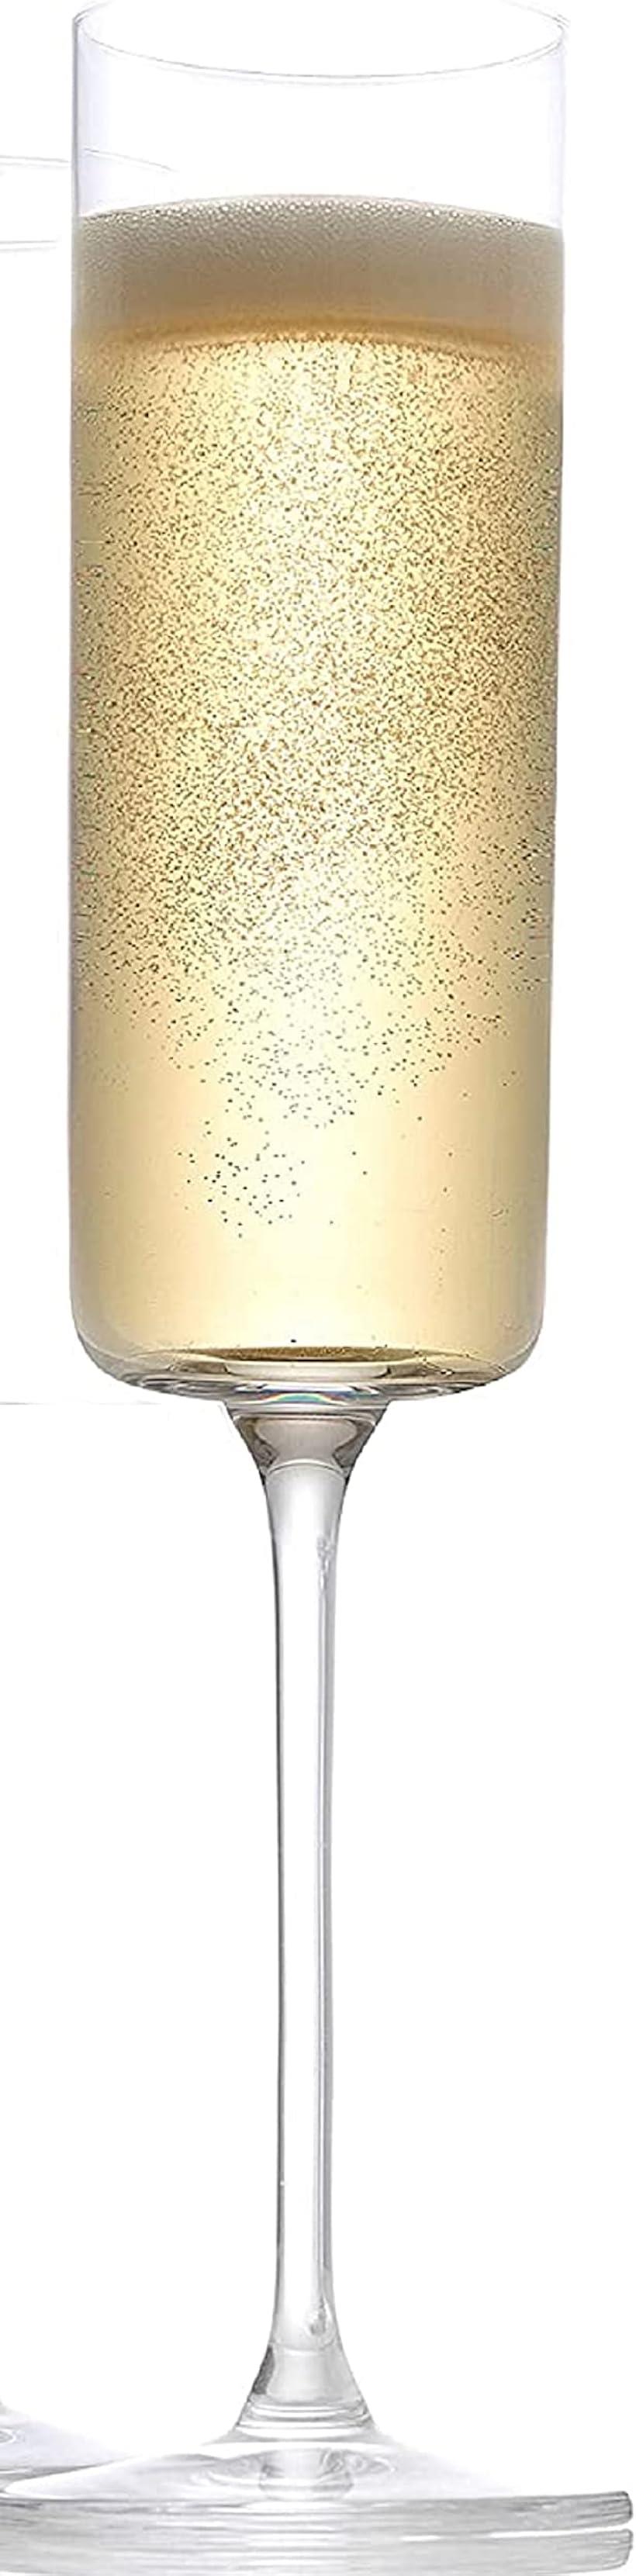 シャンパン グラス シャンパンフルート 職人 お洒落 クリスタル( 1個)